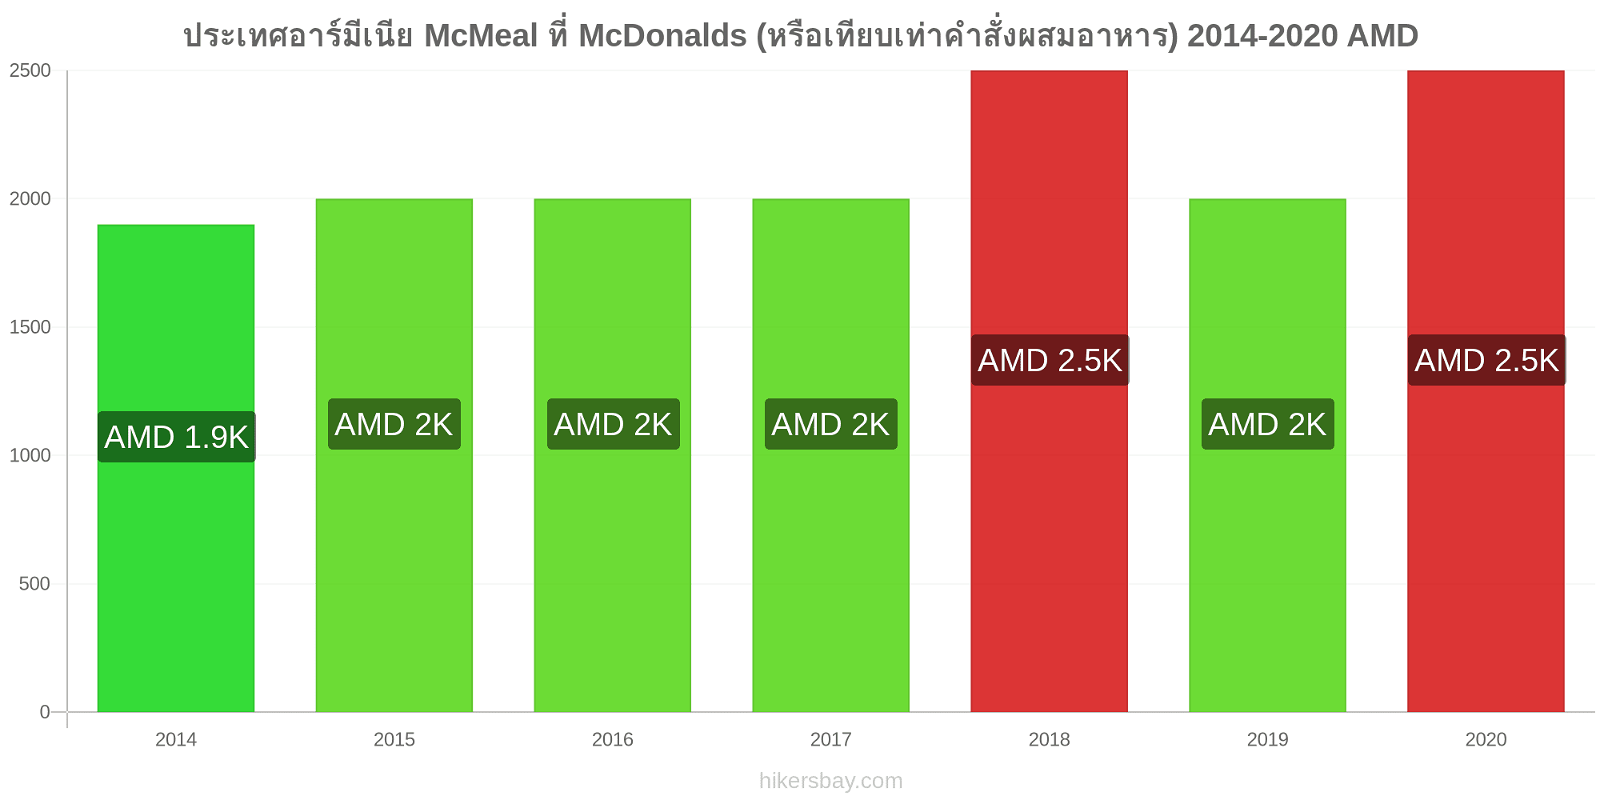 ประเทศอาร์มีเนีย การเปลี่ยนแปลงราคา McMeal ที่ McDonalds (หรือเทียบเท่าคำสั่งผสมอาหาร) hikersbay.com